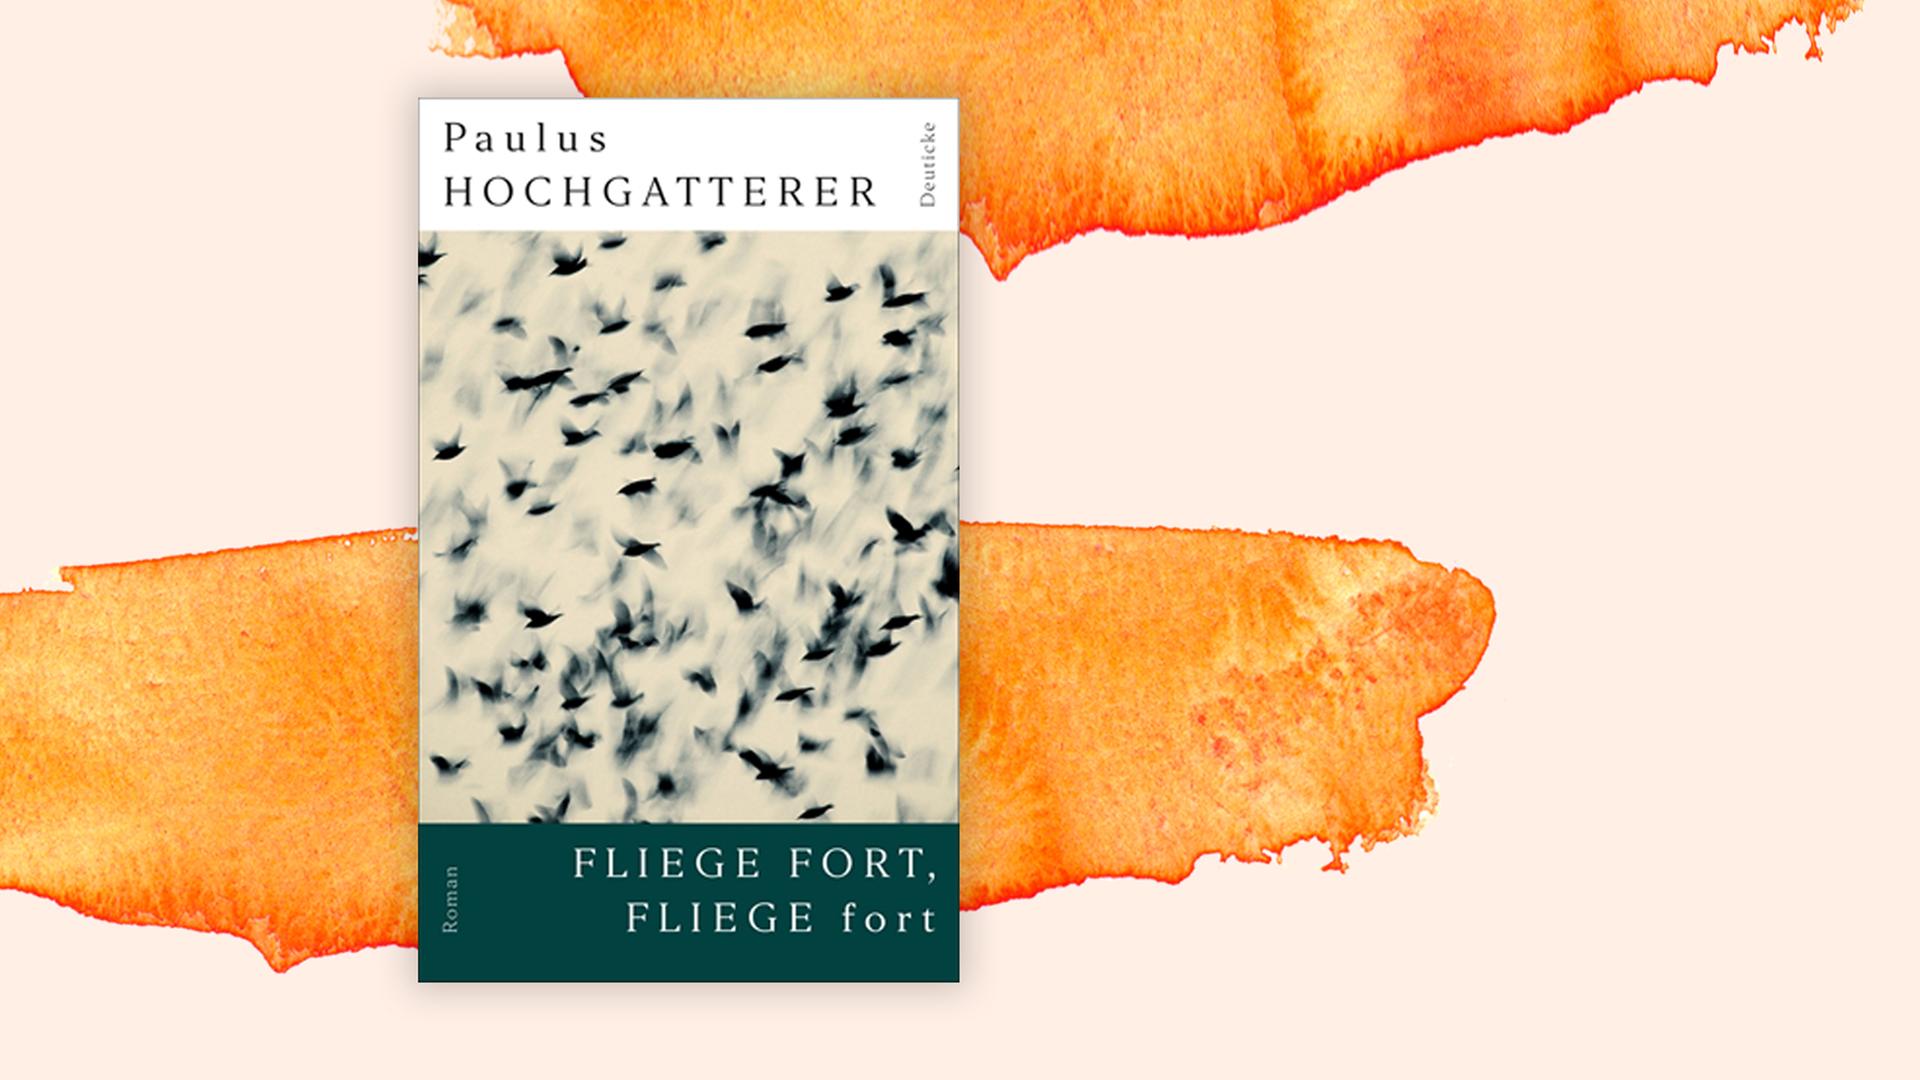 Das Cover des Kriminalromans "Fliege fort, fliege fort" von Paulus Hochgatterer